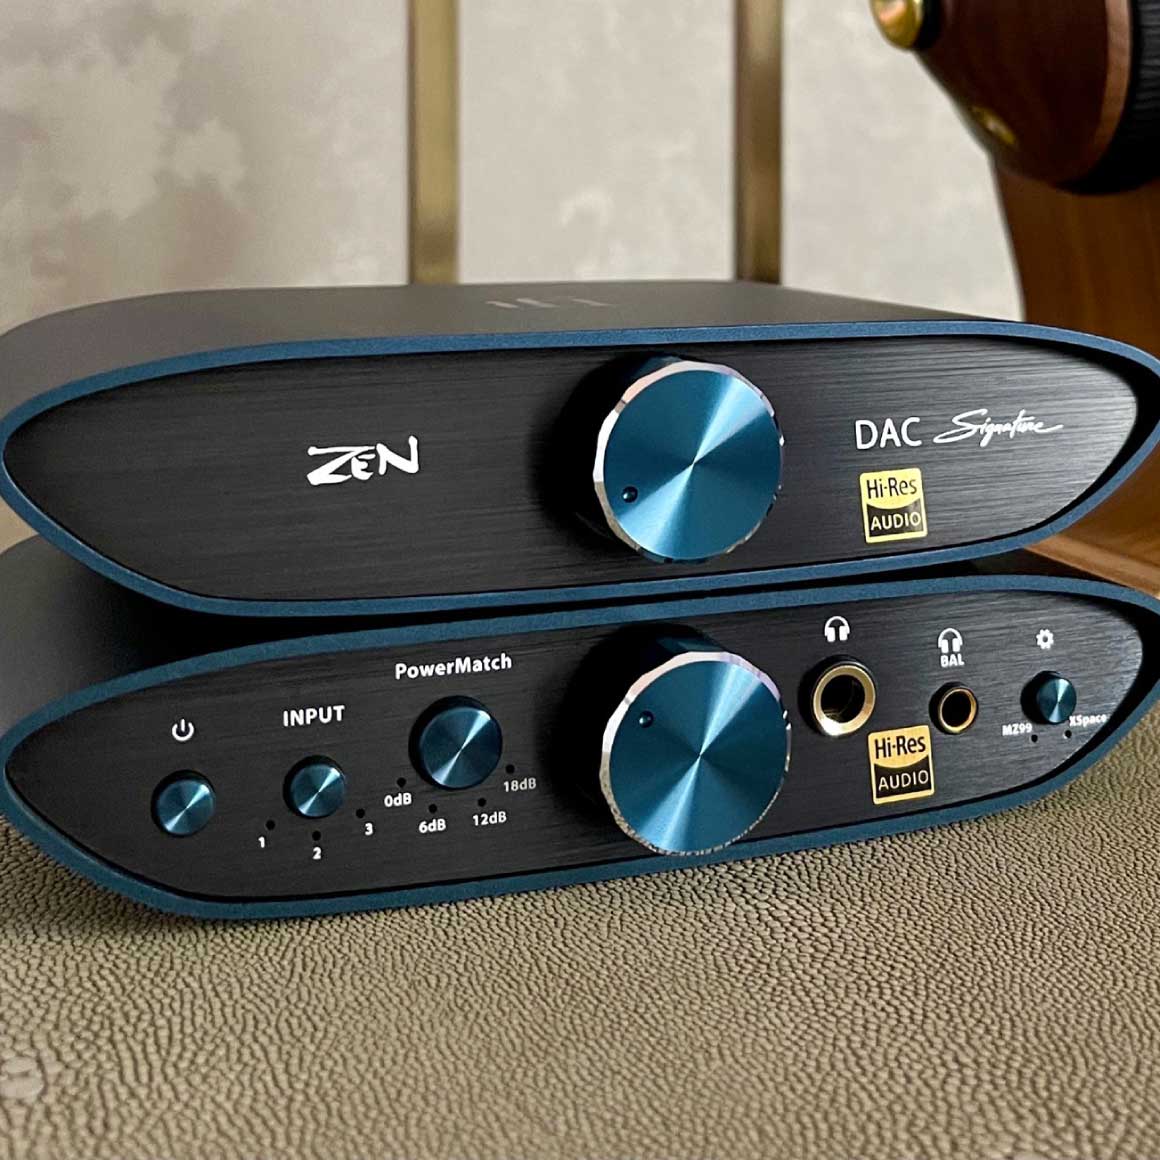 Headphone-Zone-iFi Audio-ZEN CAN Signature MZ99